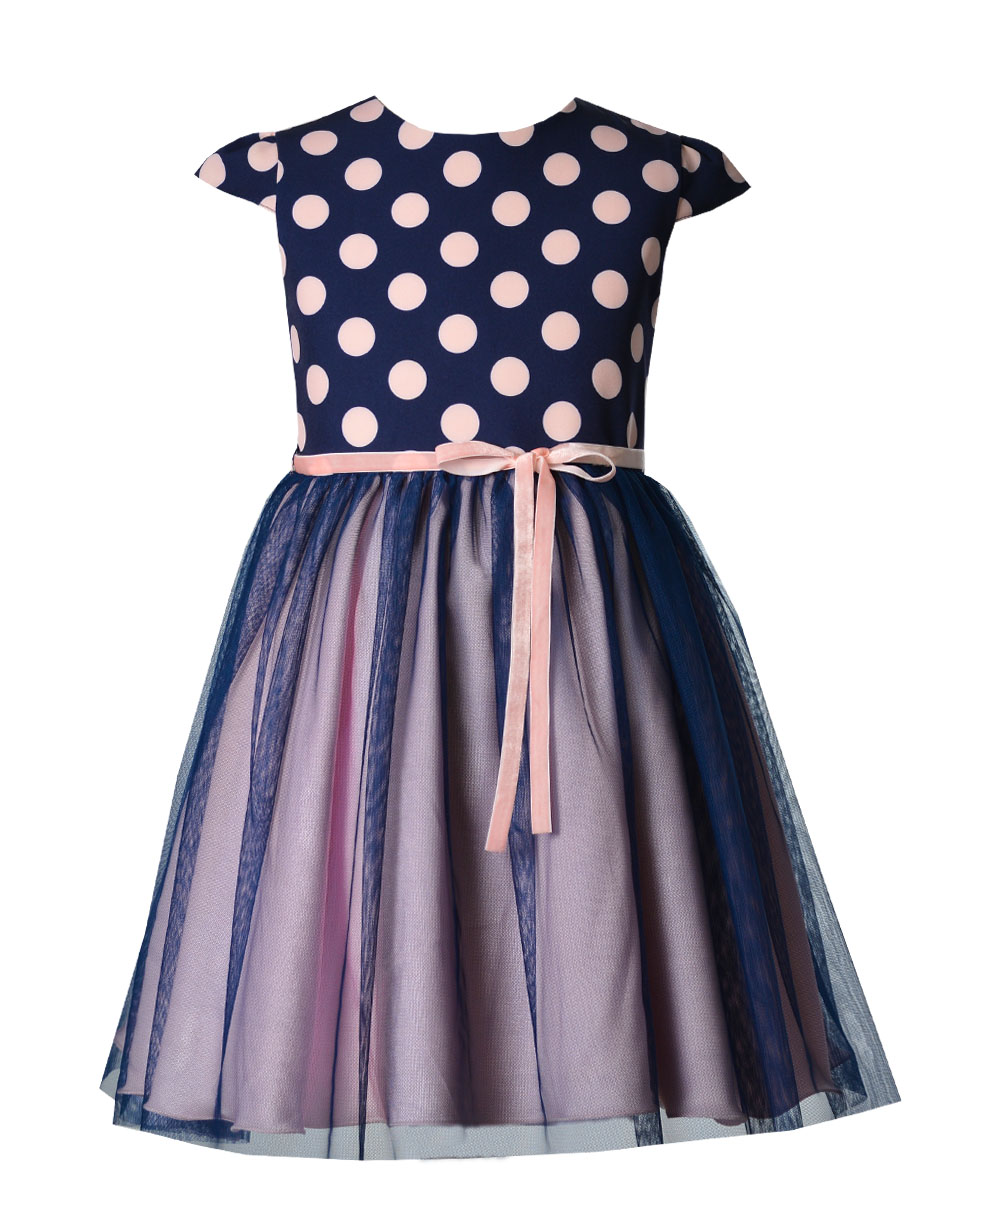 Dívčí šaty Daisy růžovo modré s tylem Emma